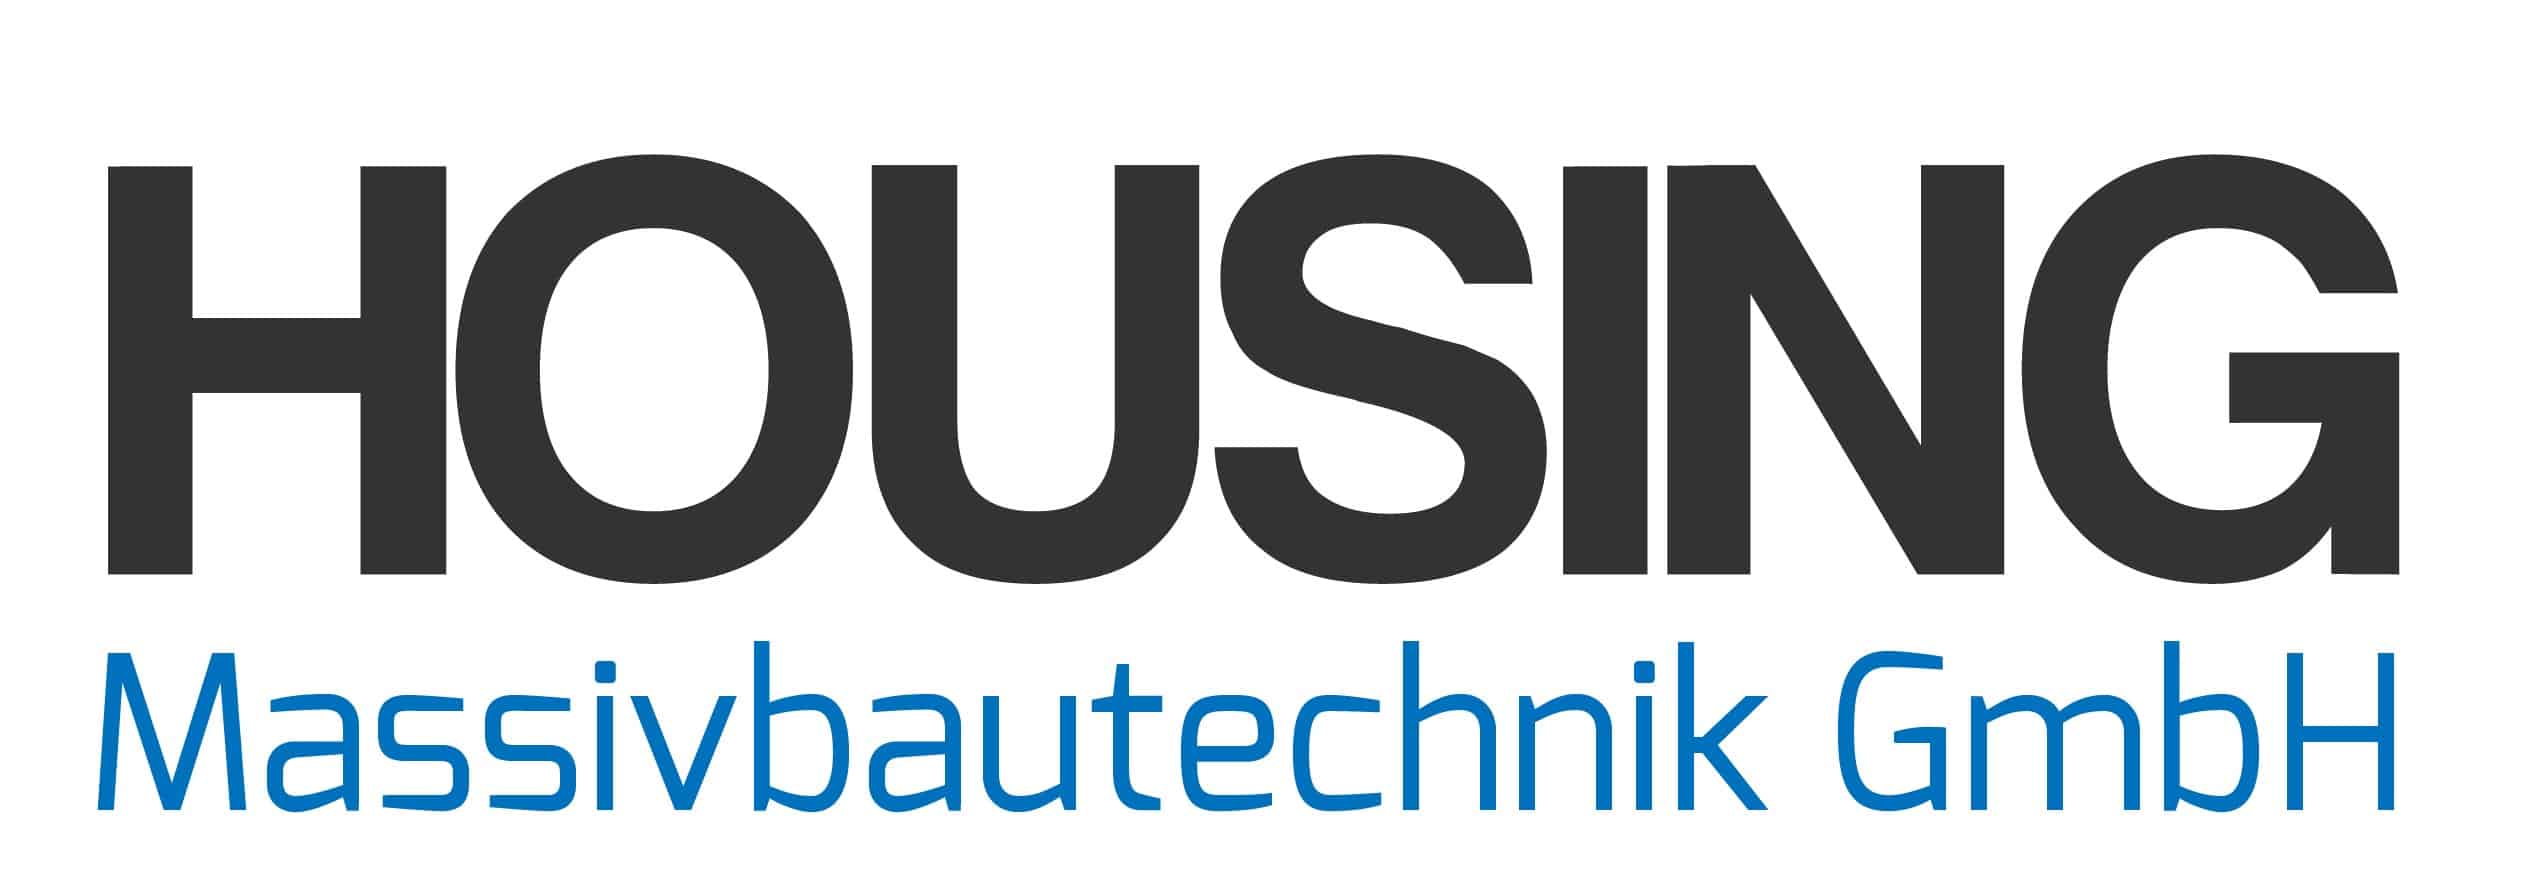 Housing Massivbautechnik GmbH